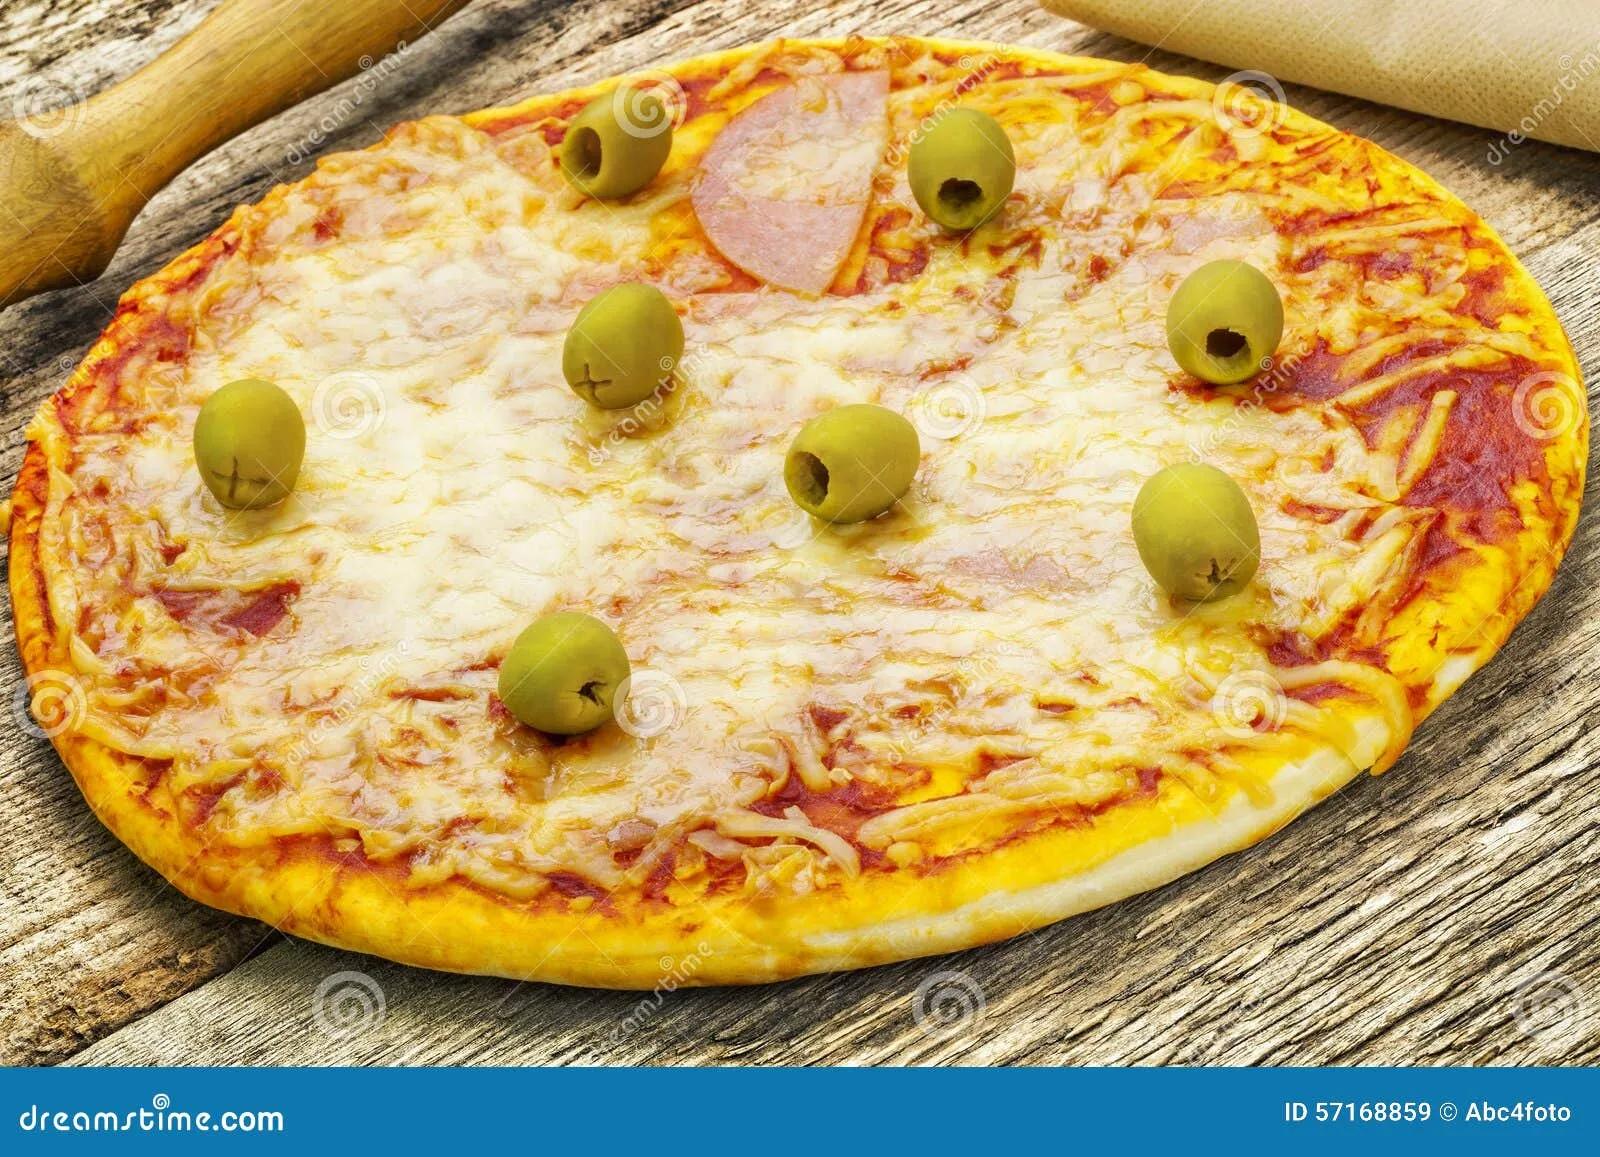 Pizza Mit Schinken Und Oliven Stockbild - Bild von gebacken, pizza ...